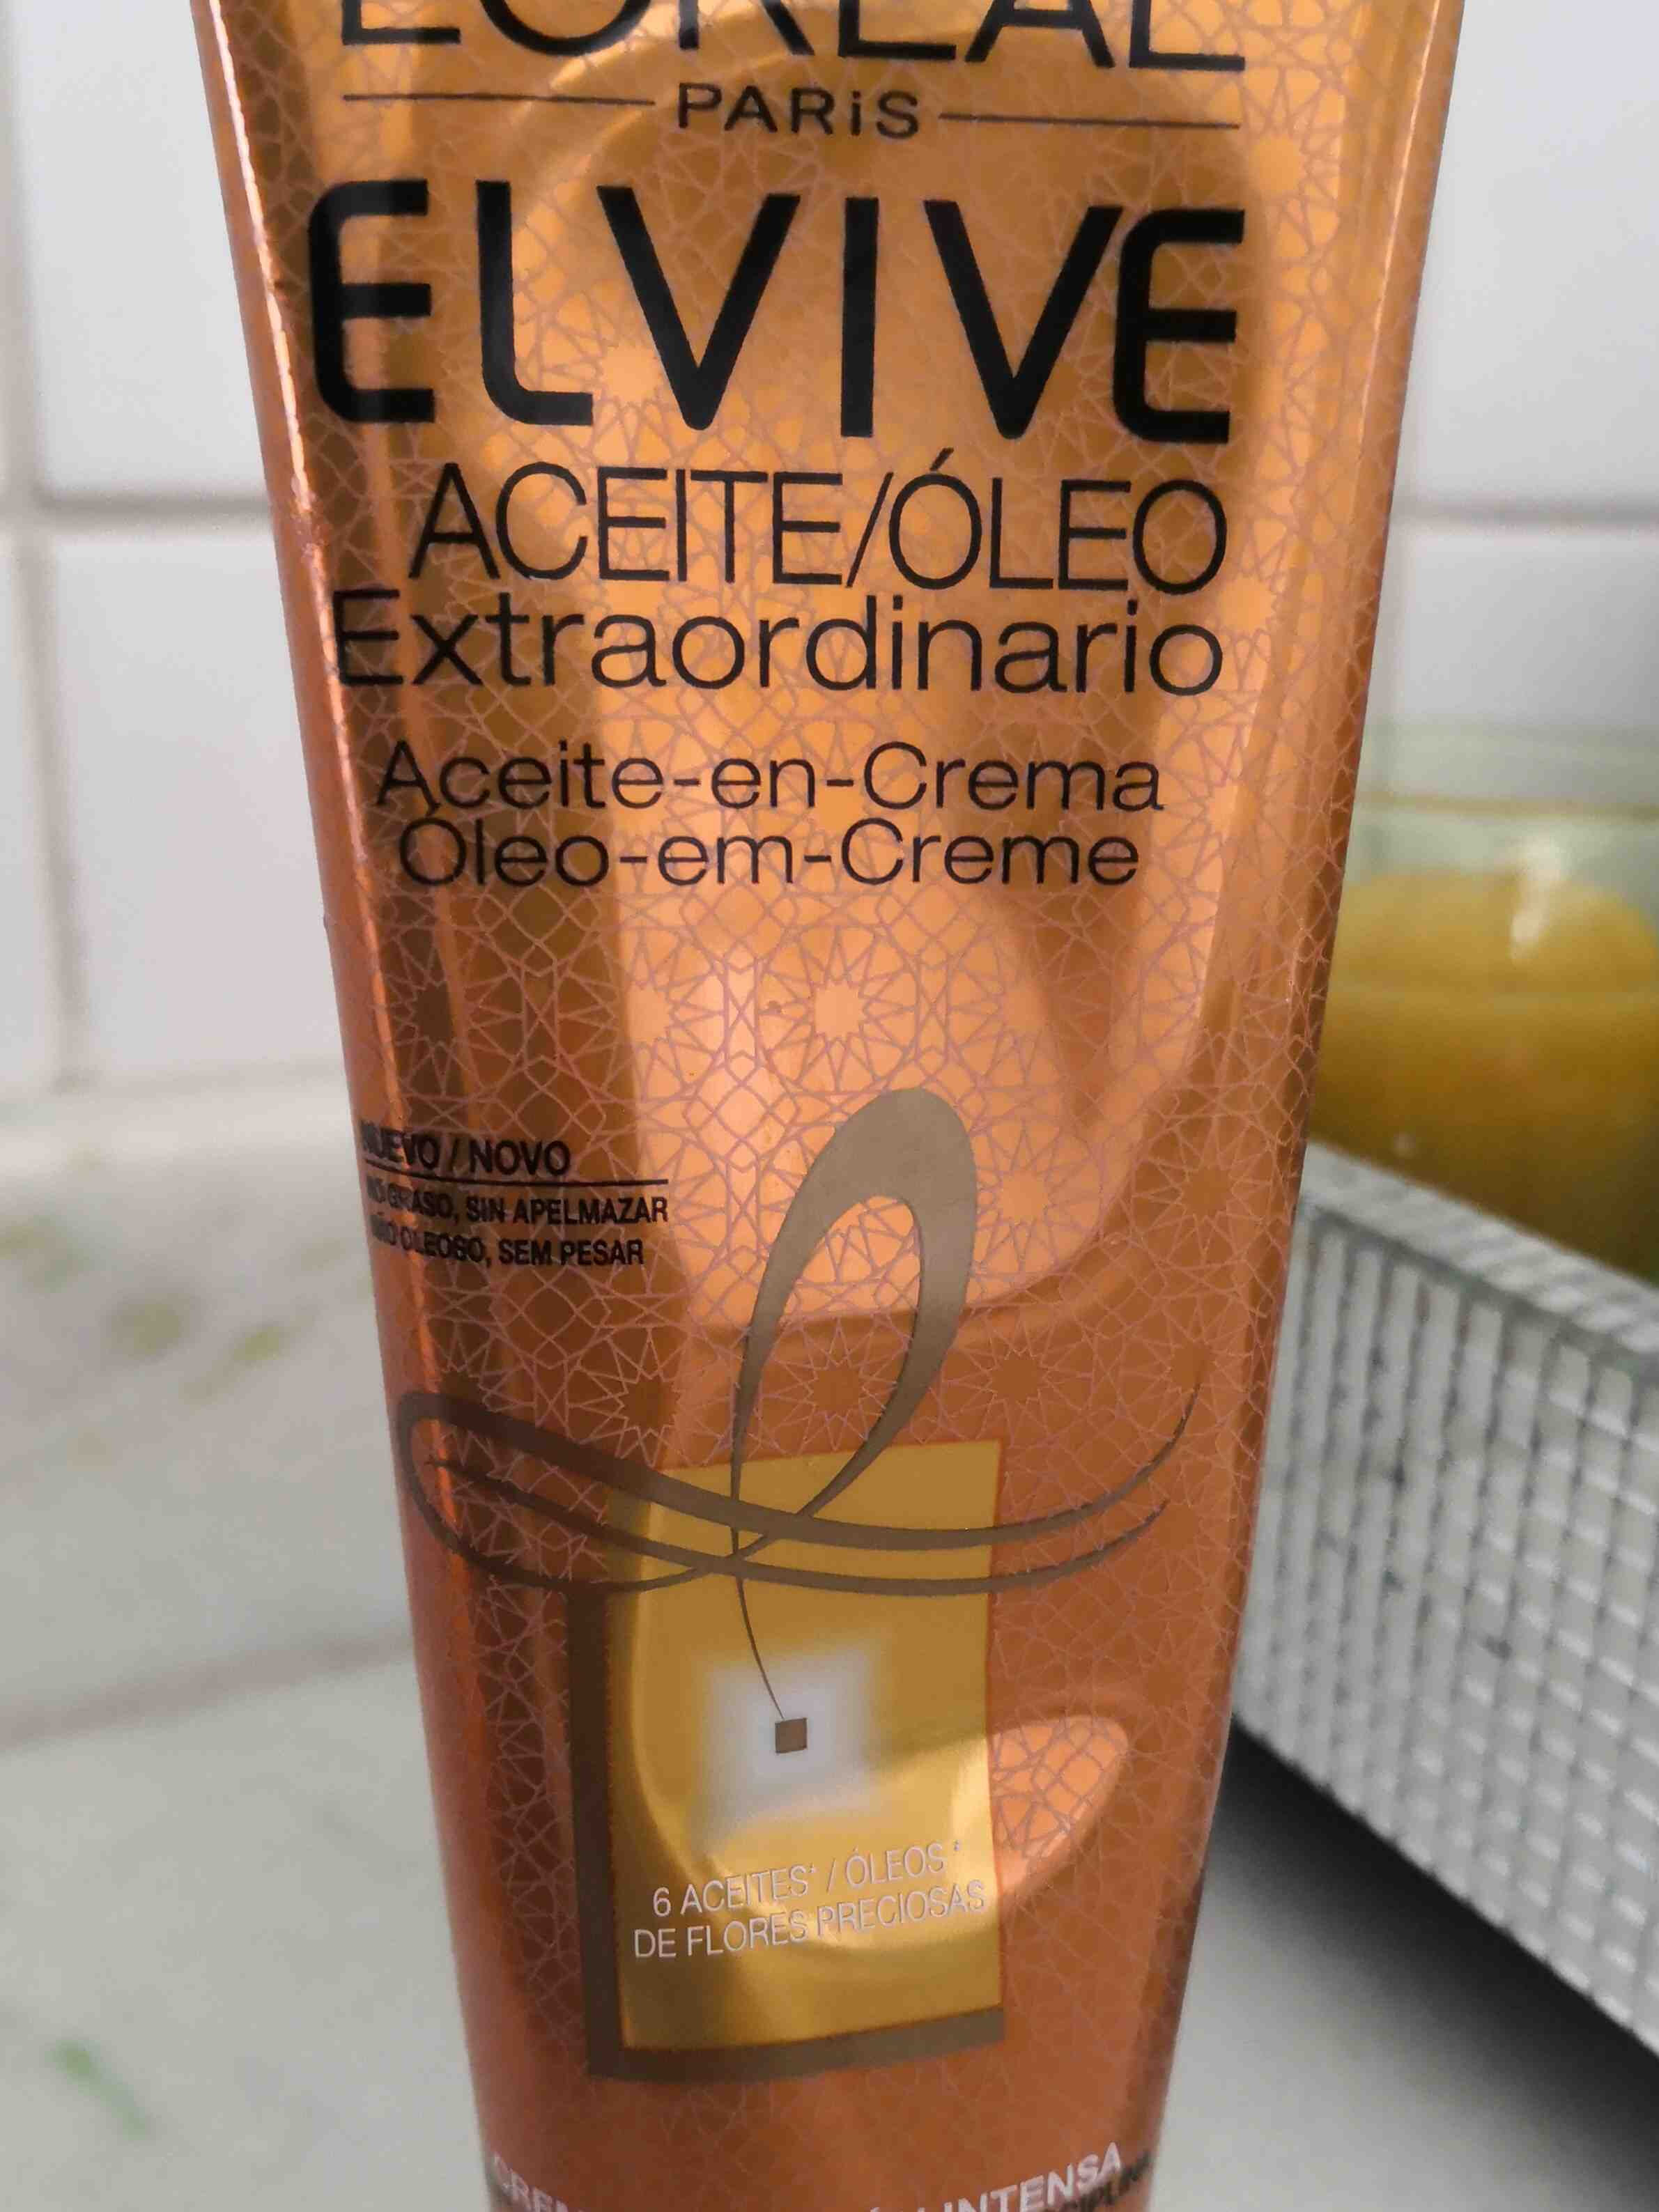 Elvive Aceite Extraordinario - Product - en